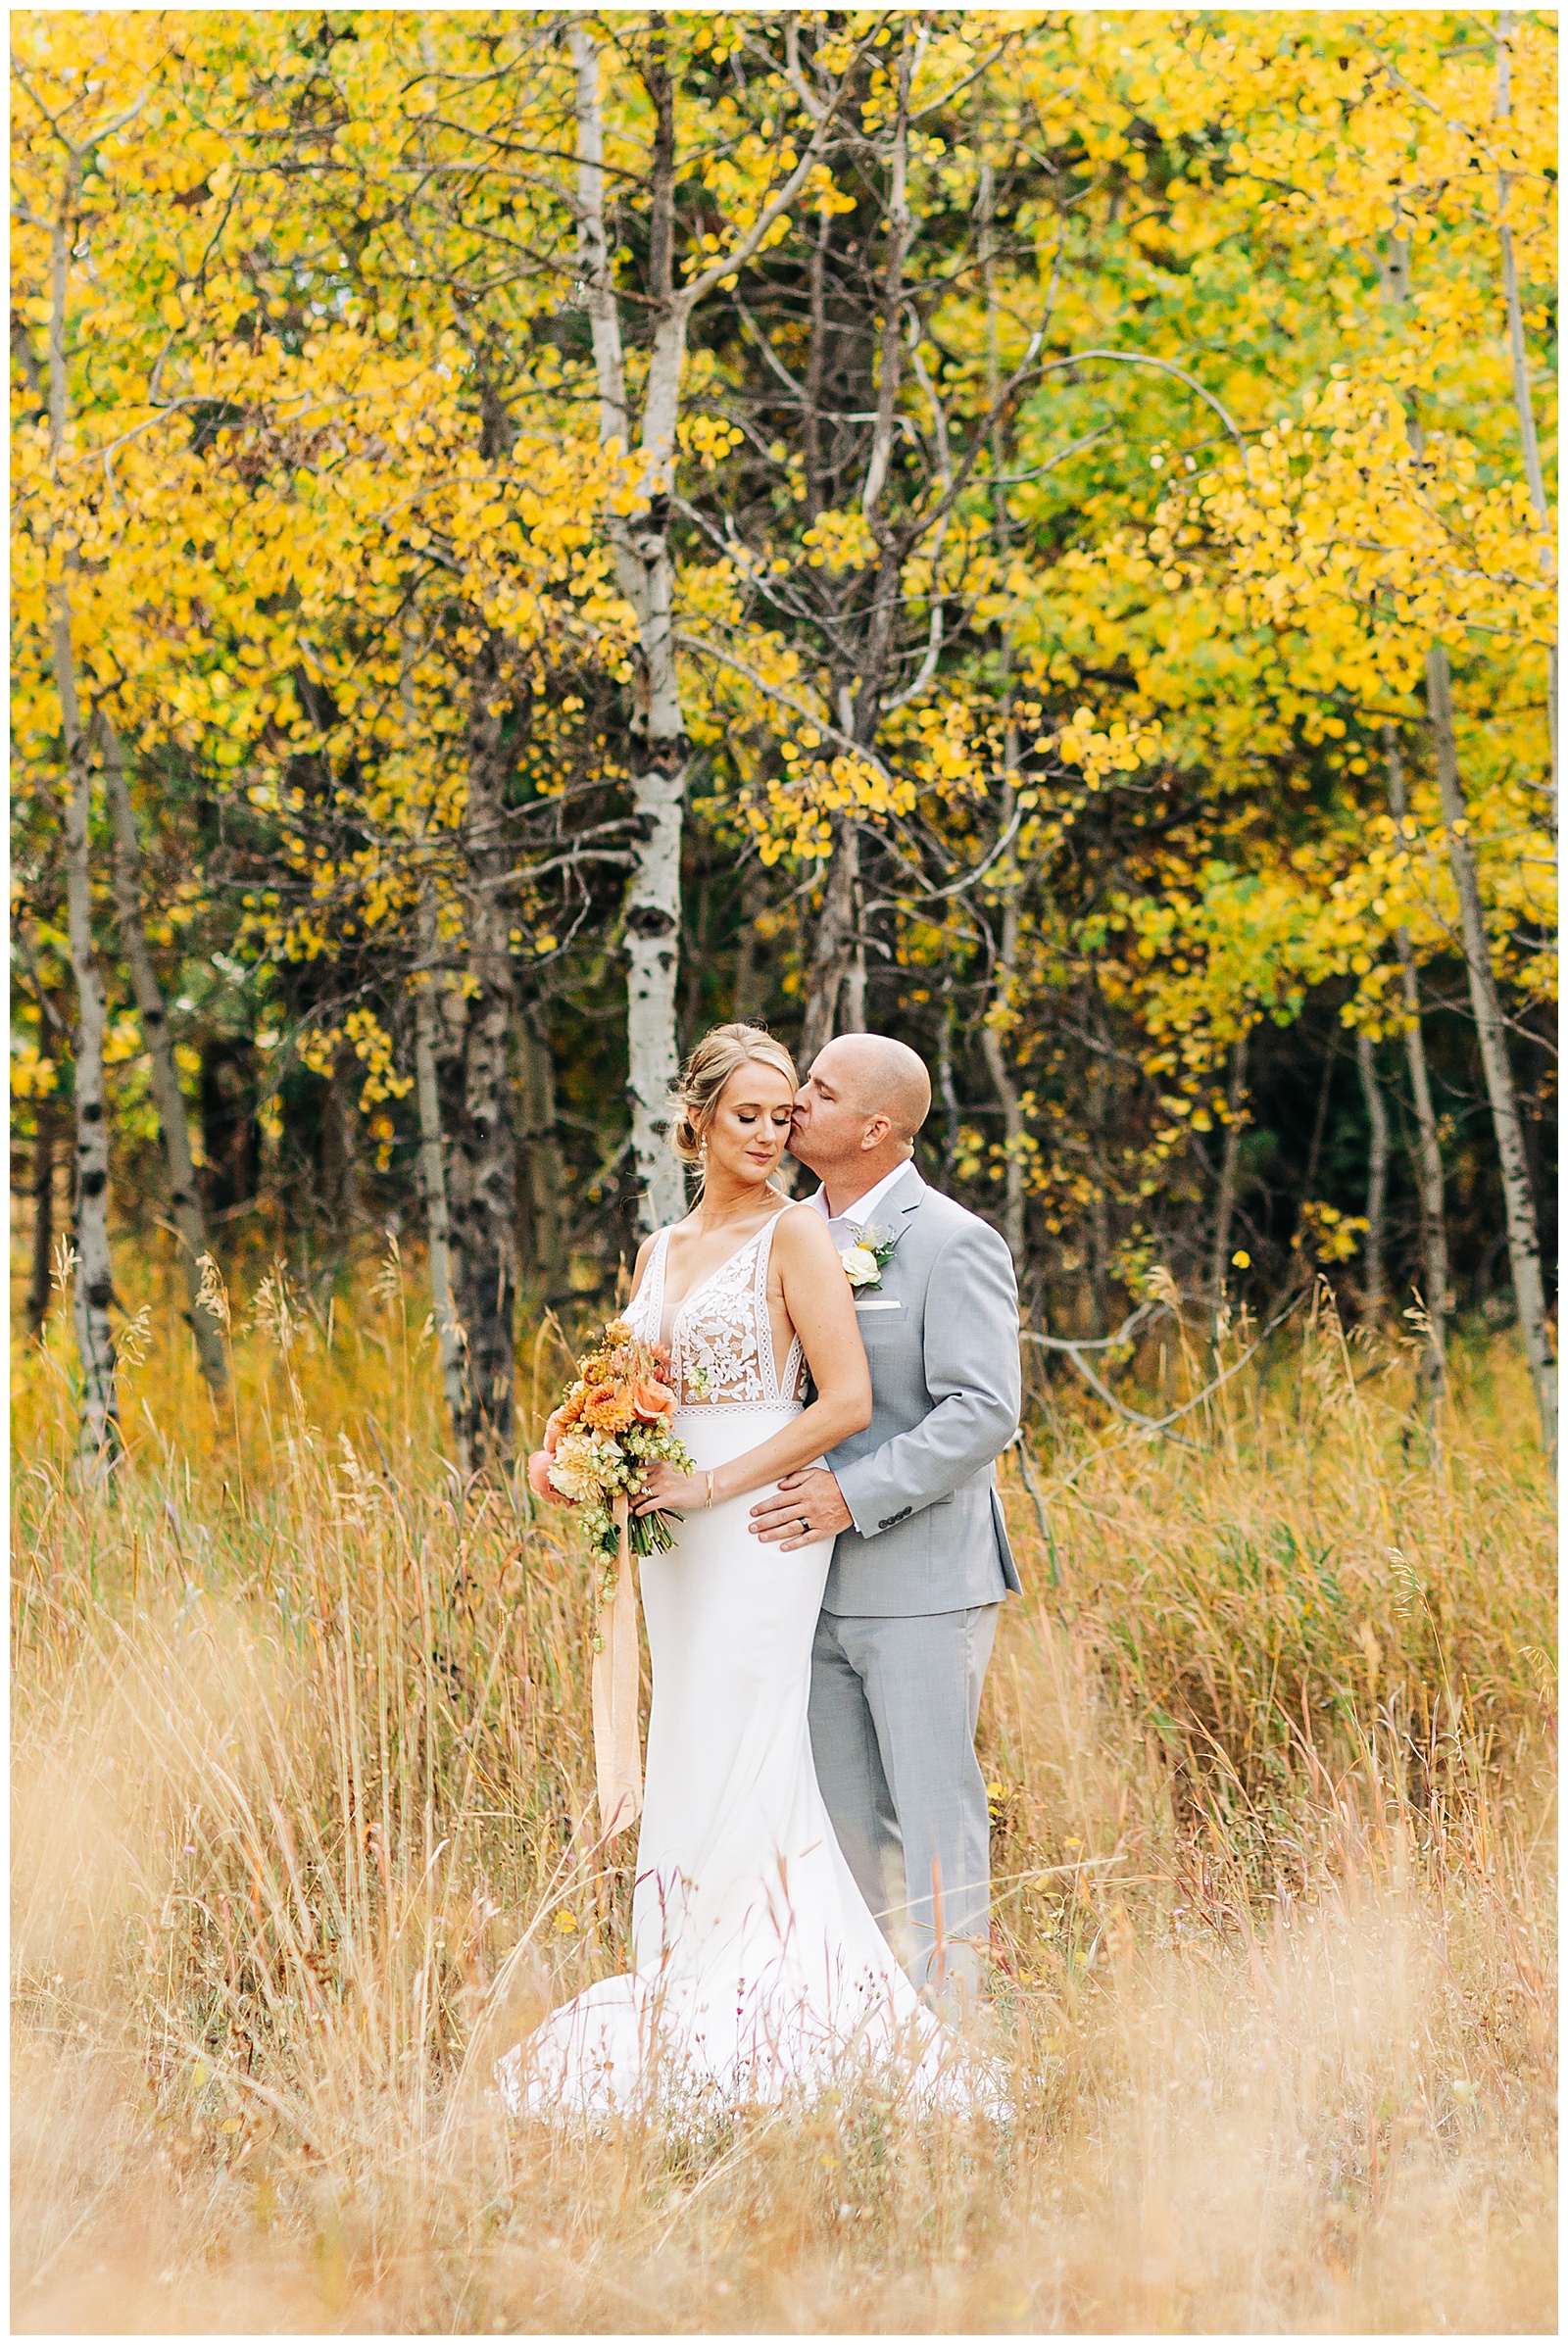 The Scandia Inn, A fall wedding in McCall Idaho, McCall Idaho Wedding, McCall Wedding, Wedding photographers